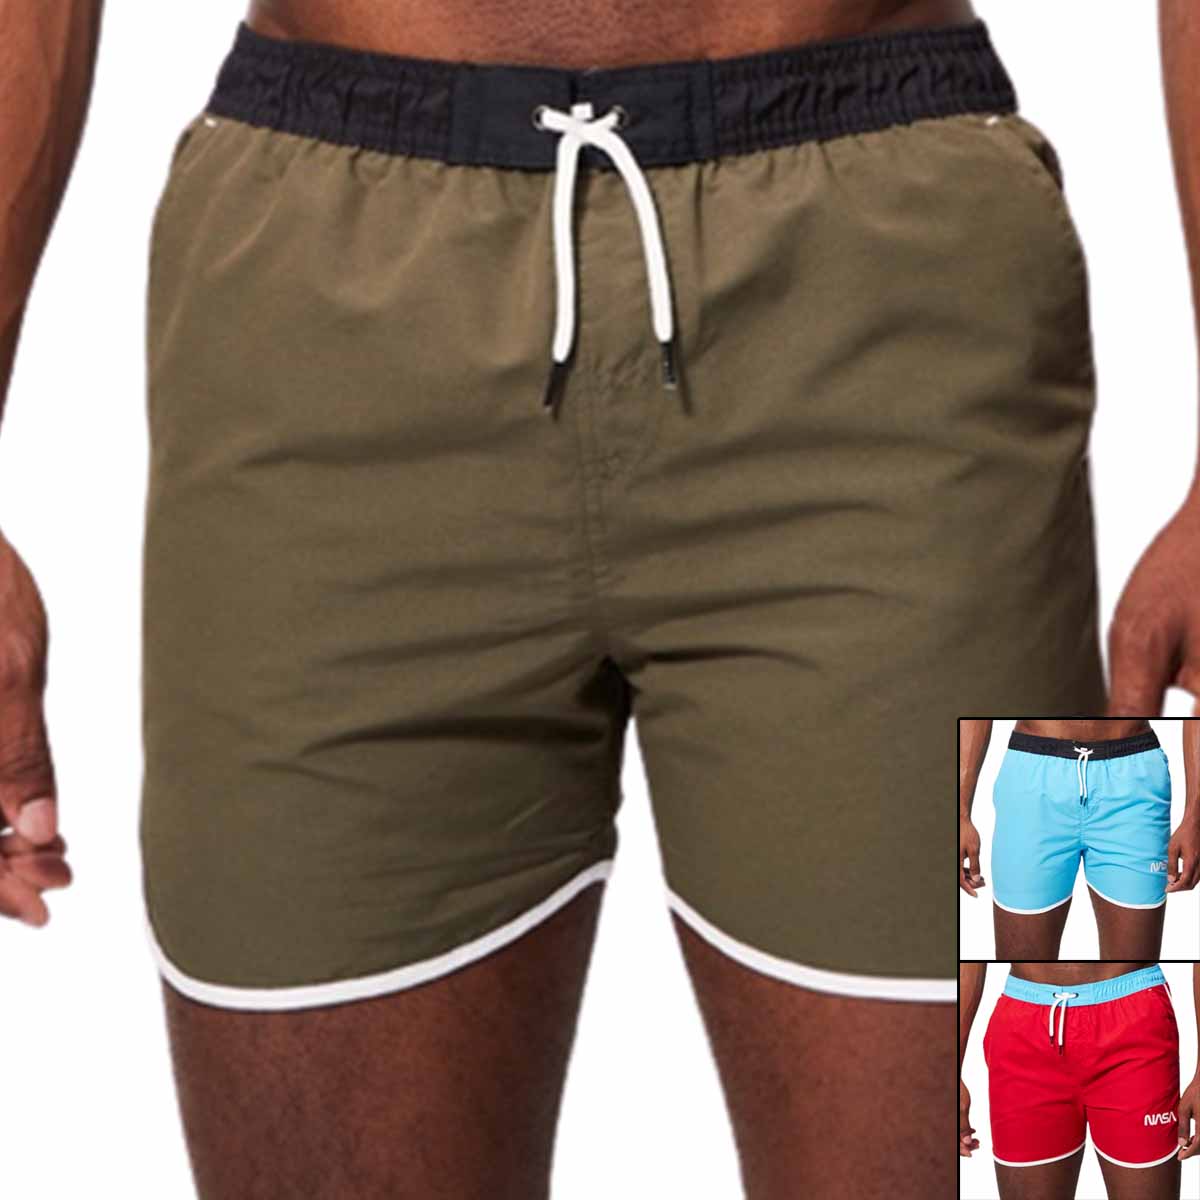 Nasa short shorts Man